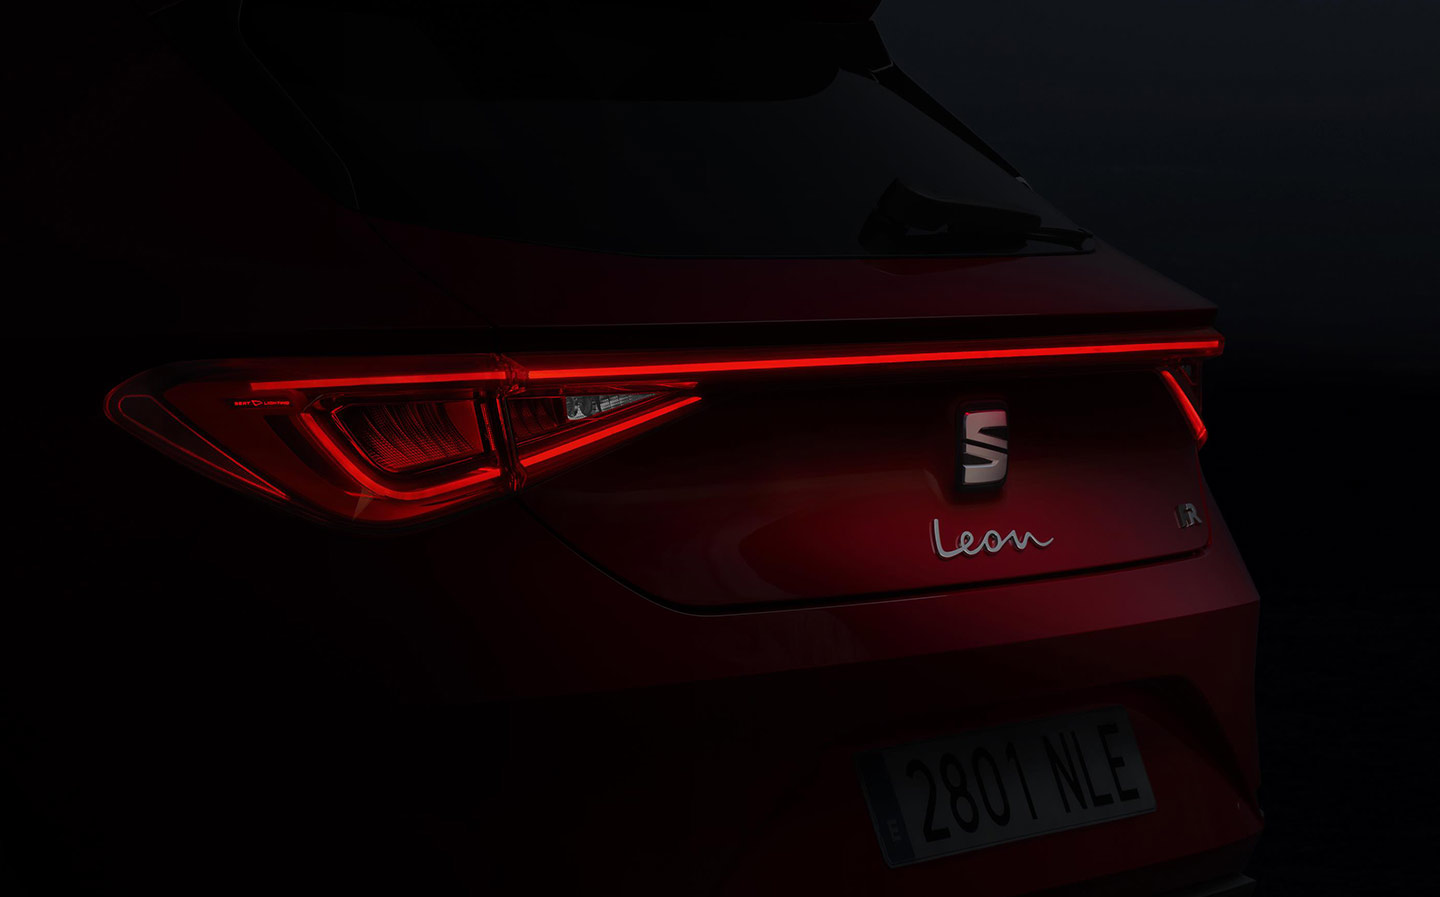 2020 SEAT Leon teaser